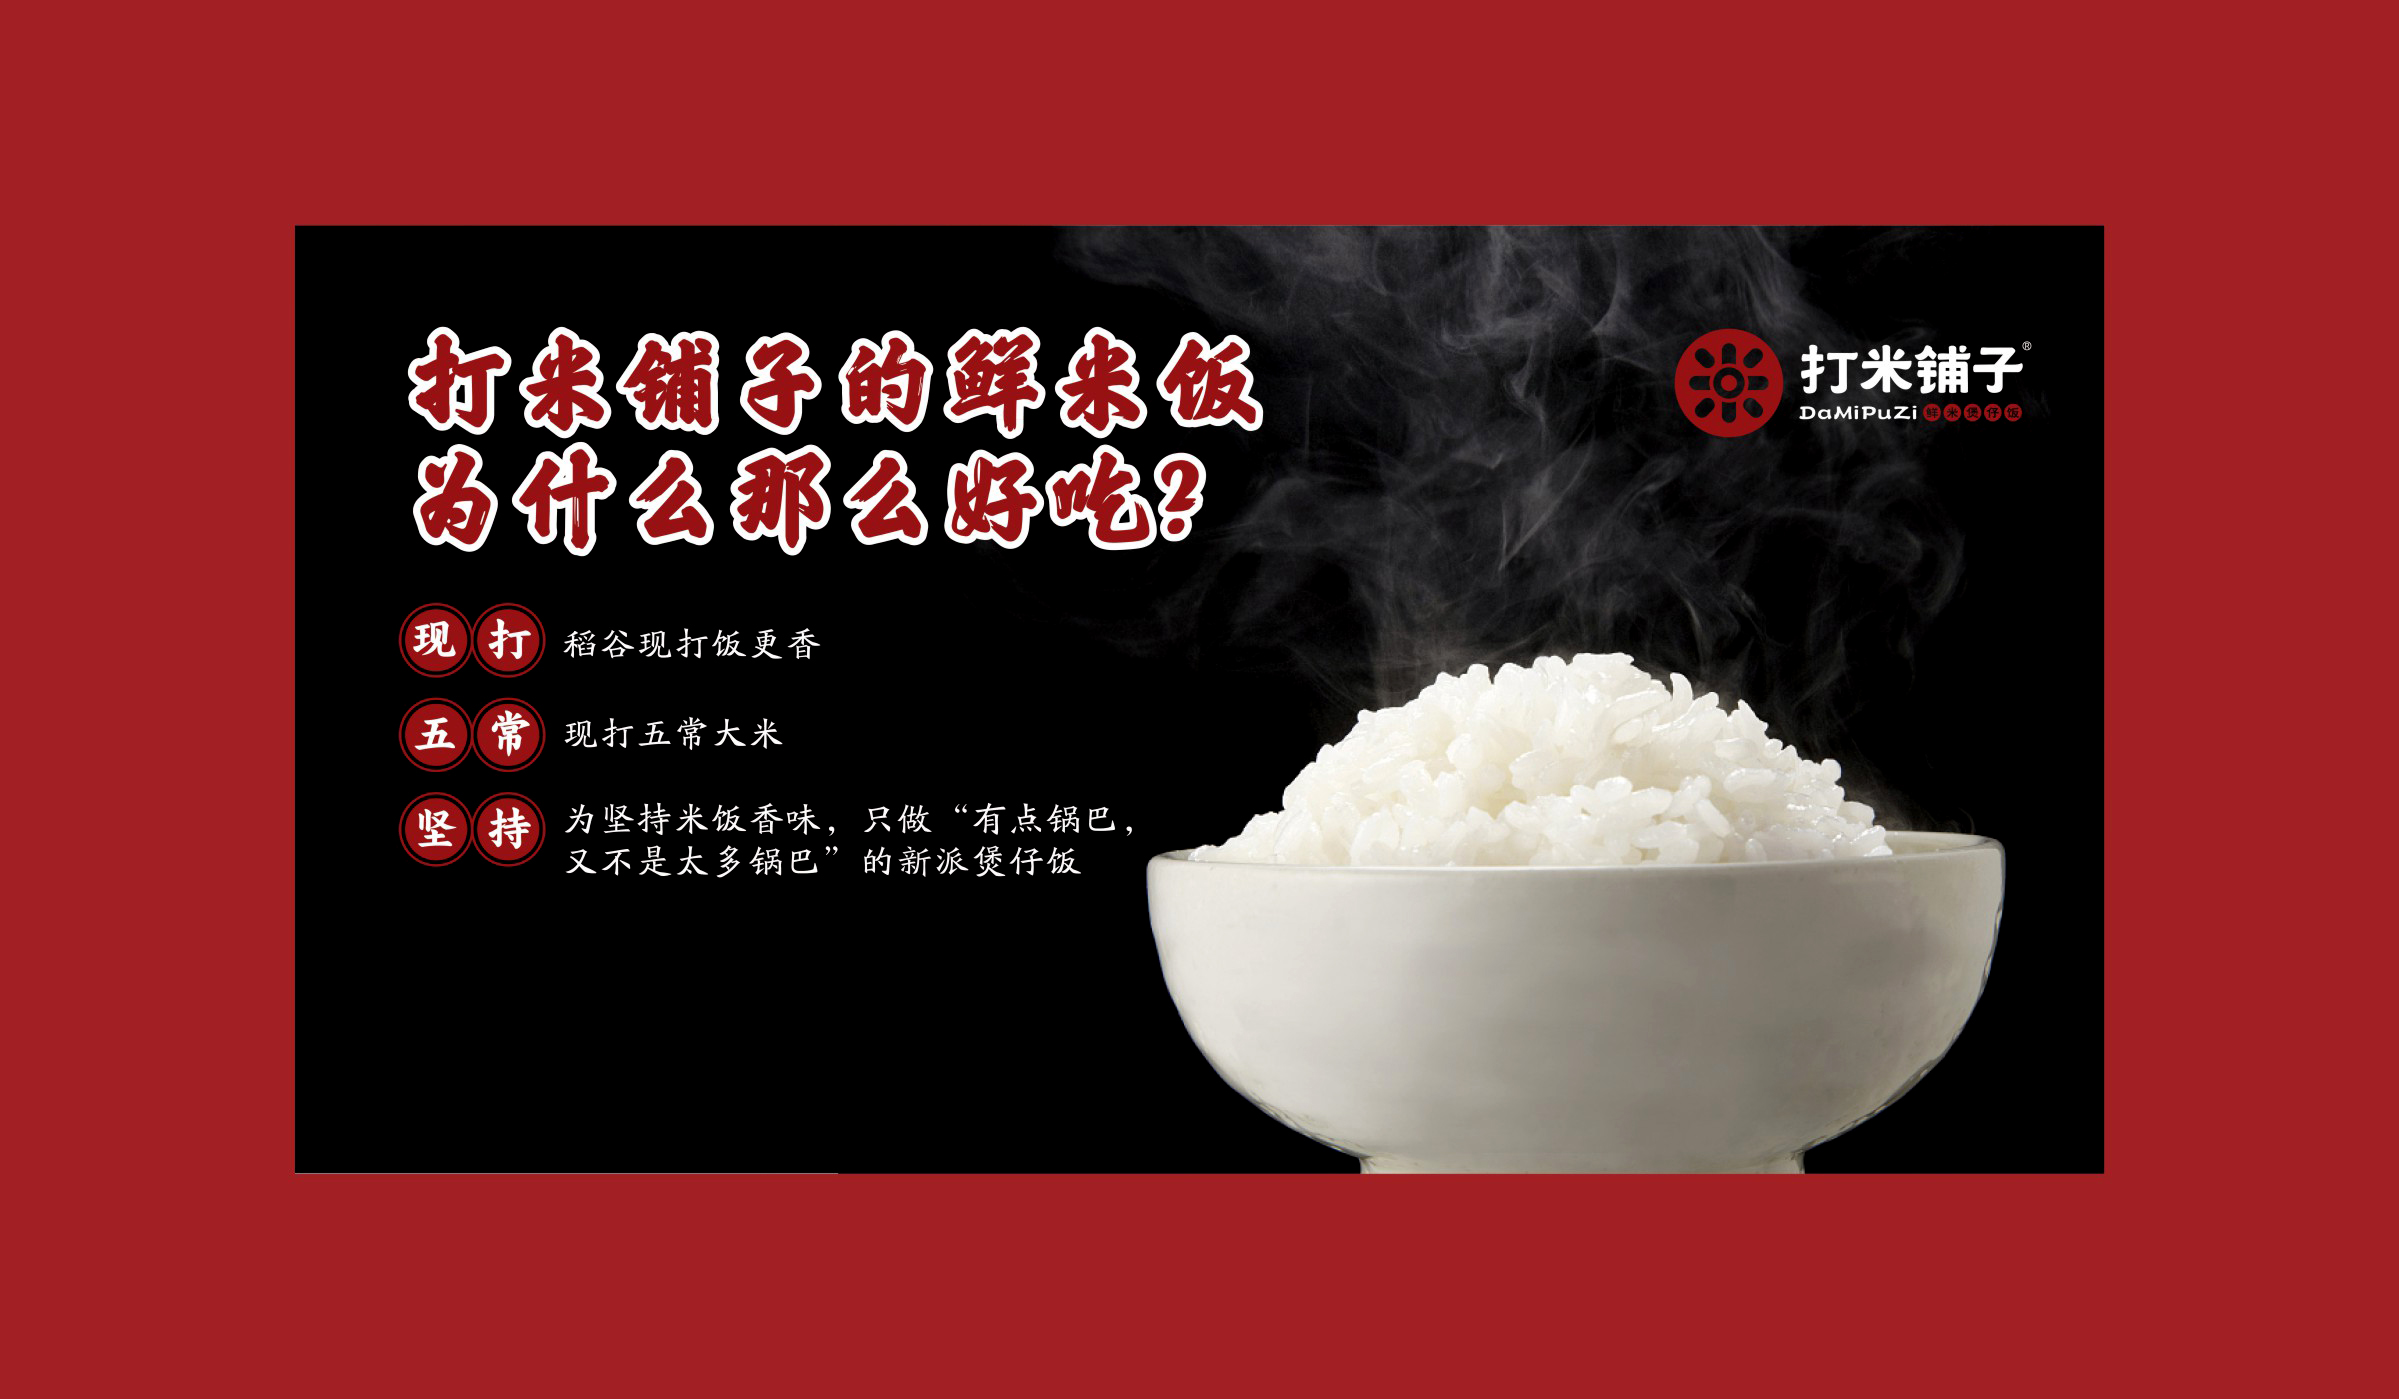 打米铺子品牌形象营销型海报设计